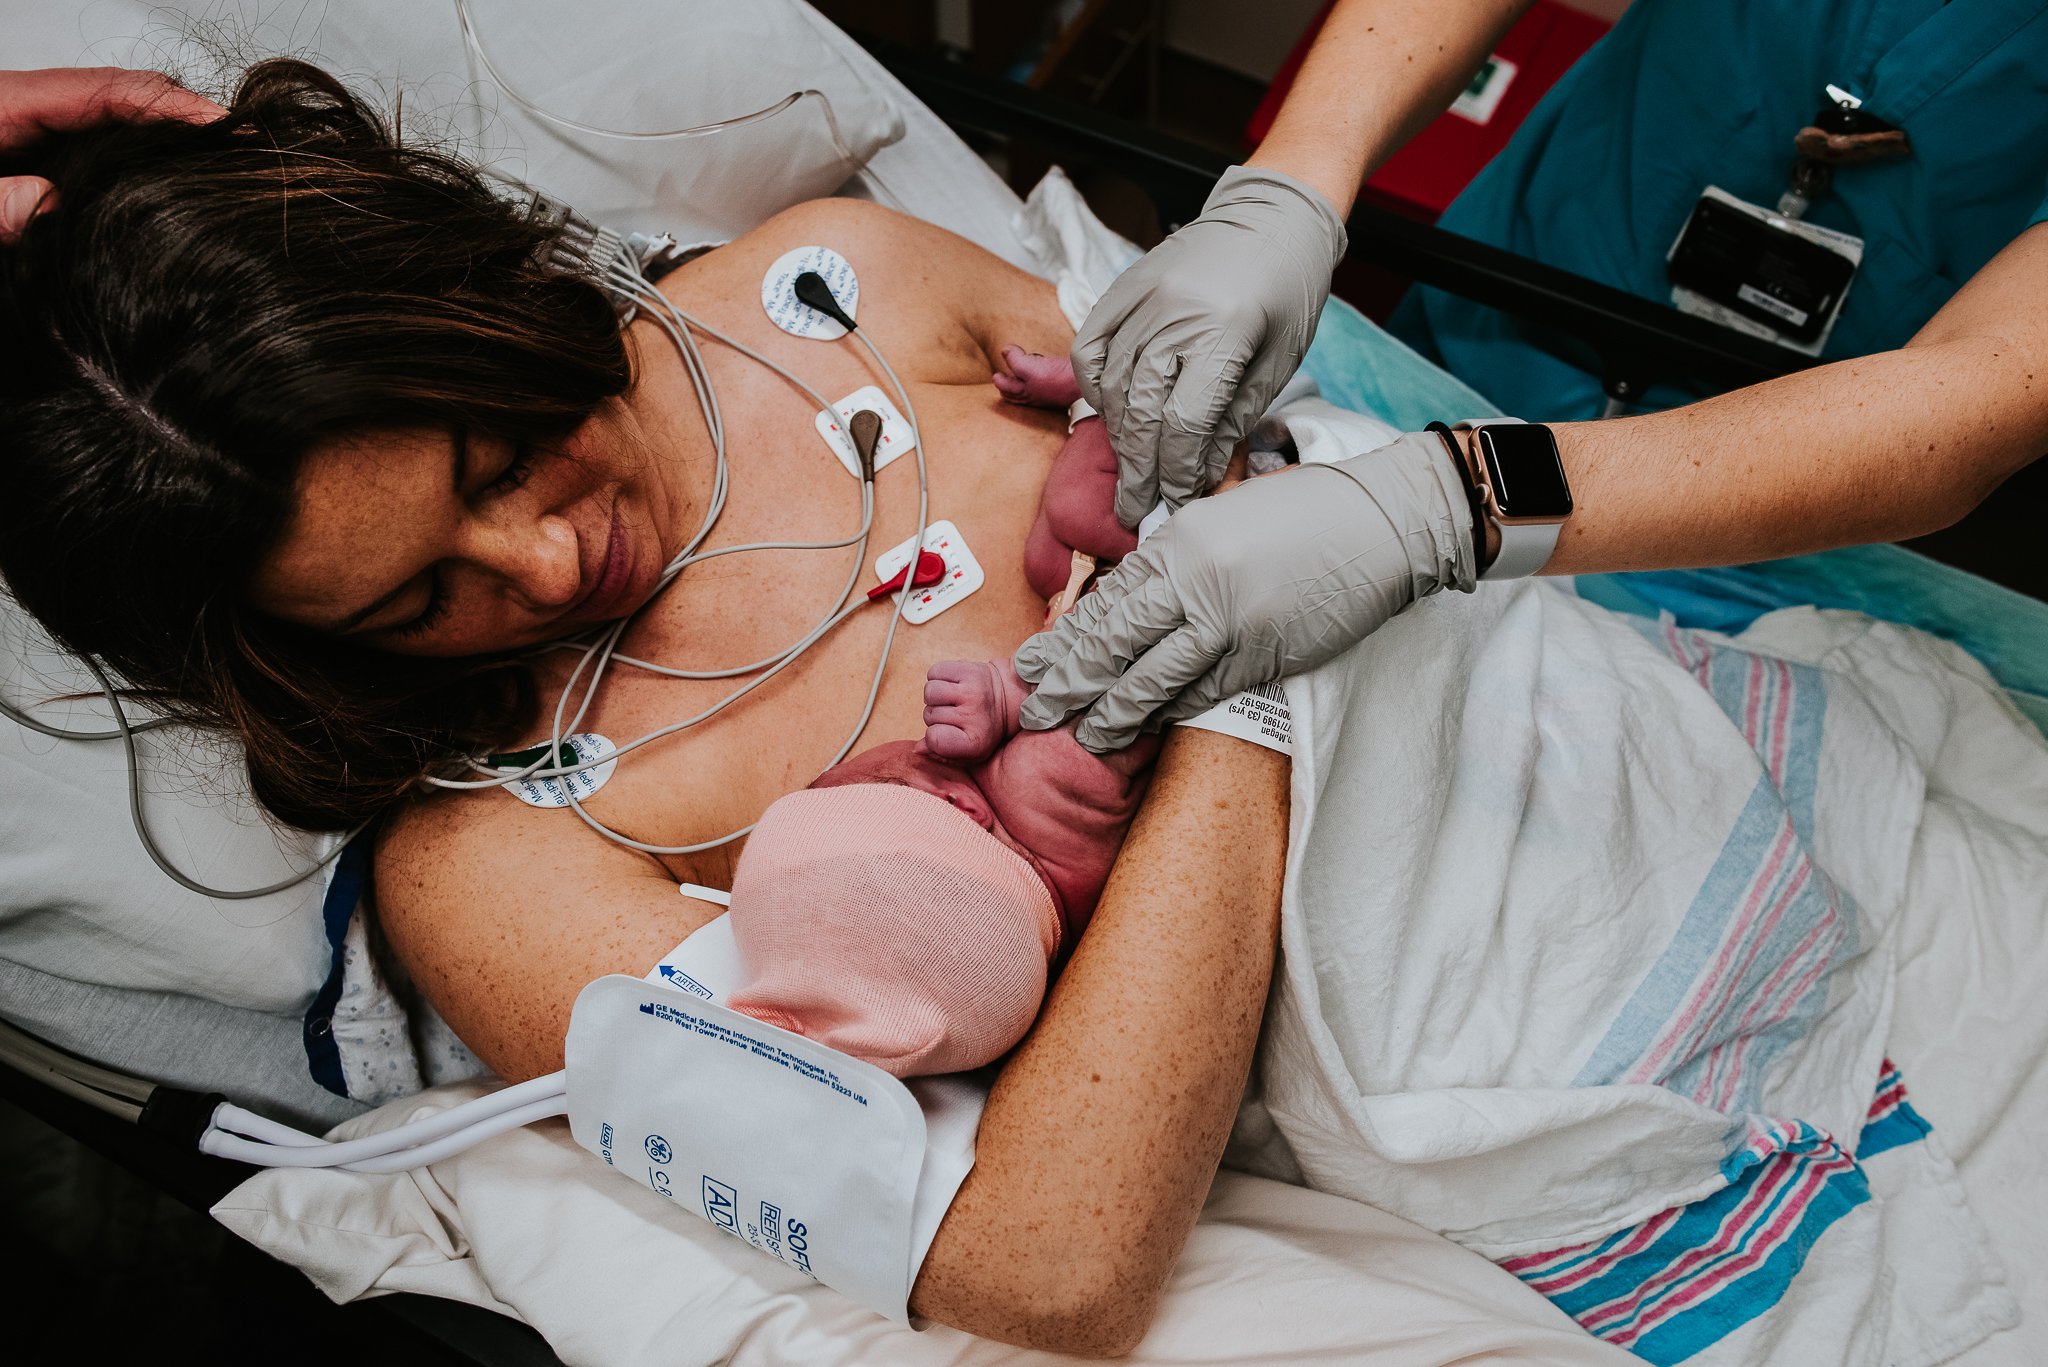 touch-newborn-after-cesarean.jpg